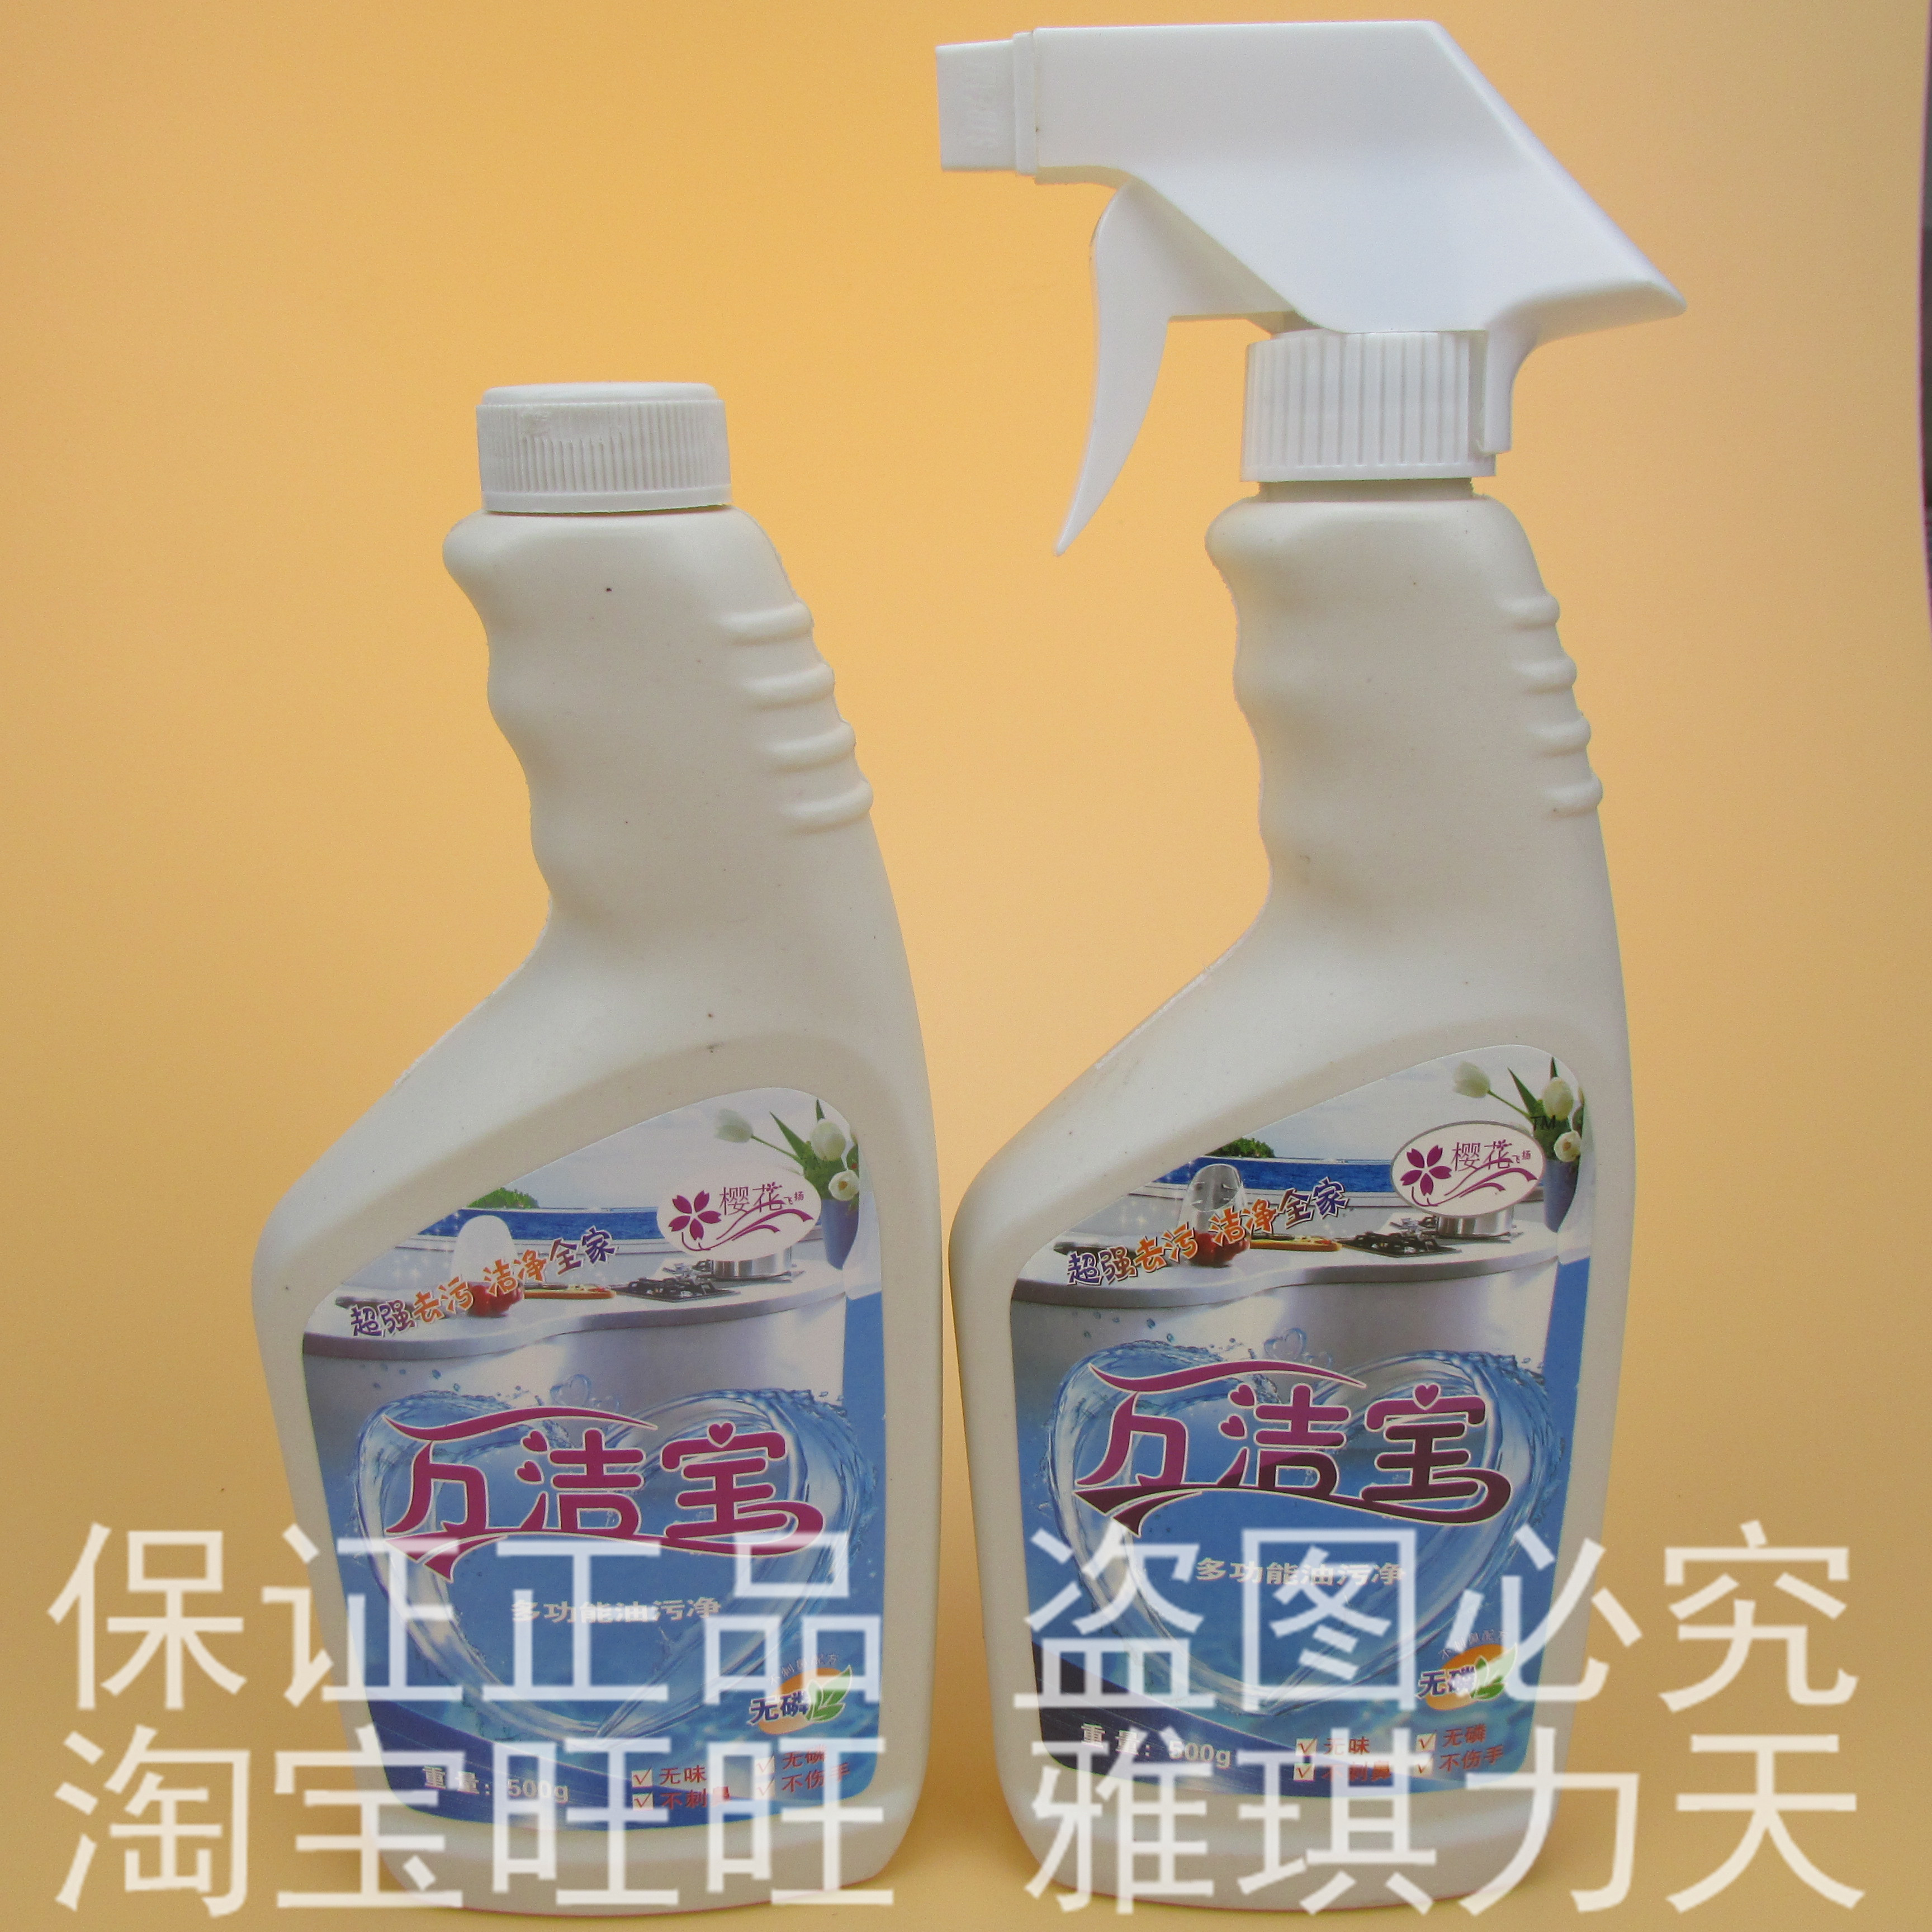 【官方直销】 万洁宝多功能油污净 清洗剂清洁剂 组合装